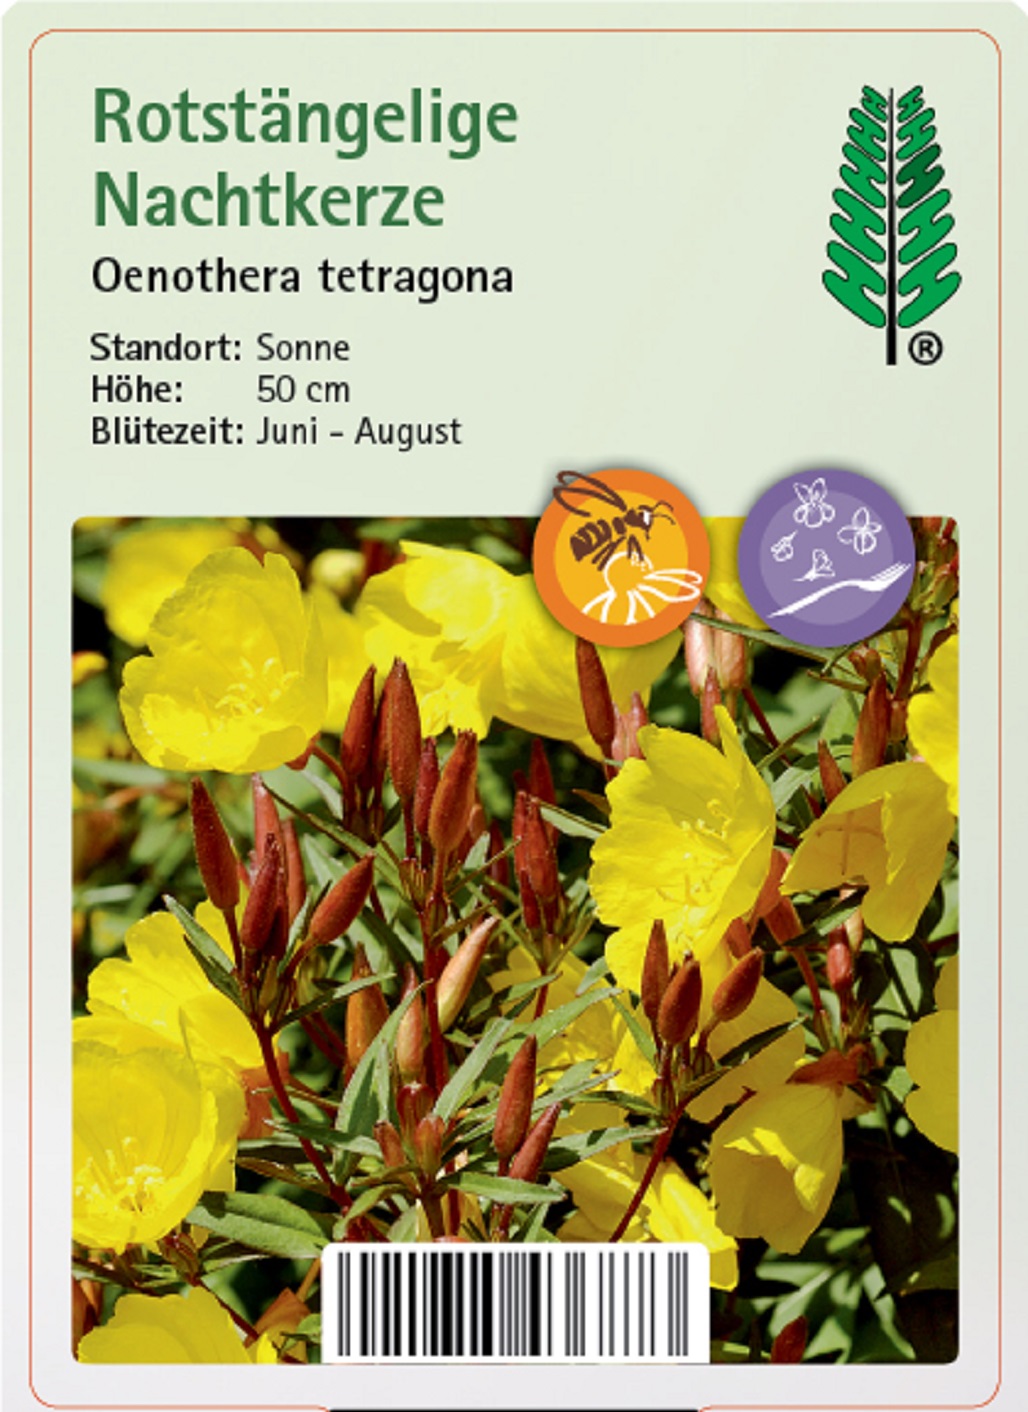 Rotstängelige Nachtkerze - Oenothera tetragona, 11cm Topf